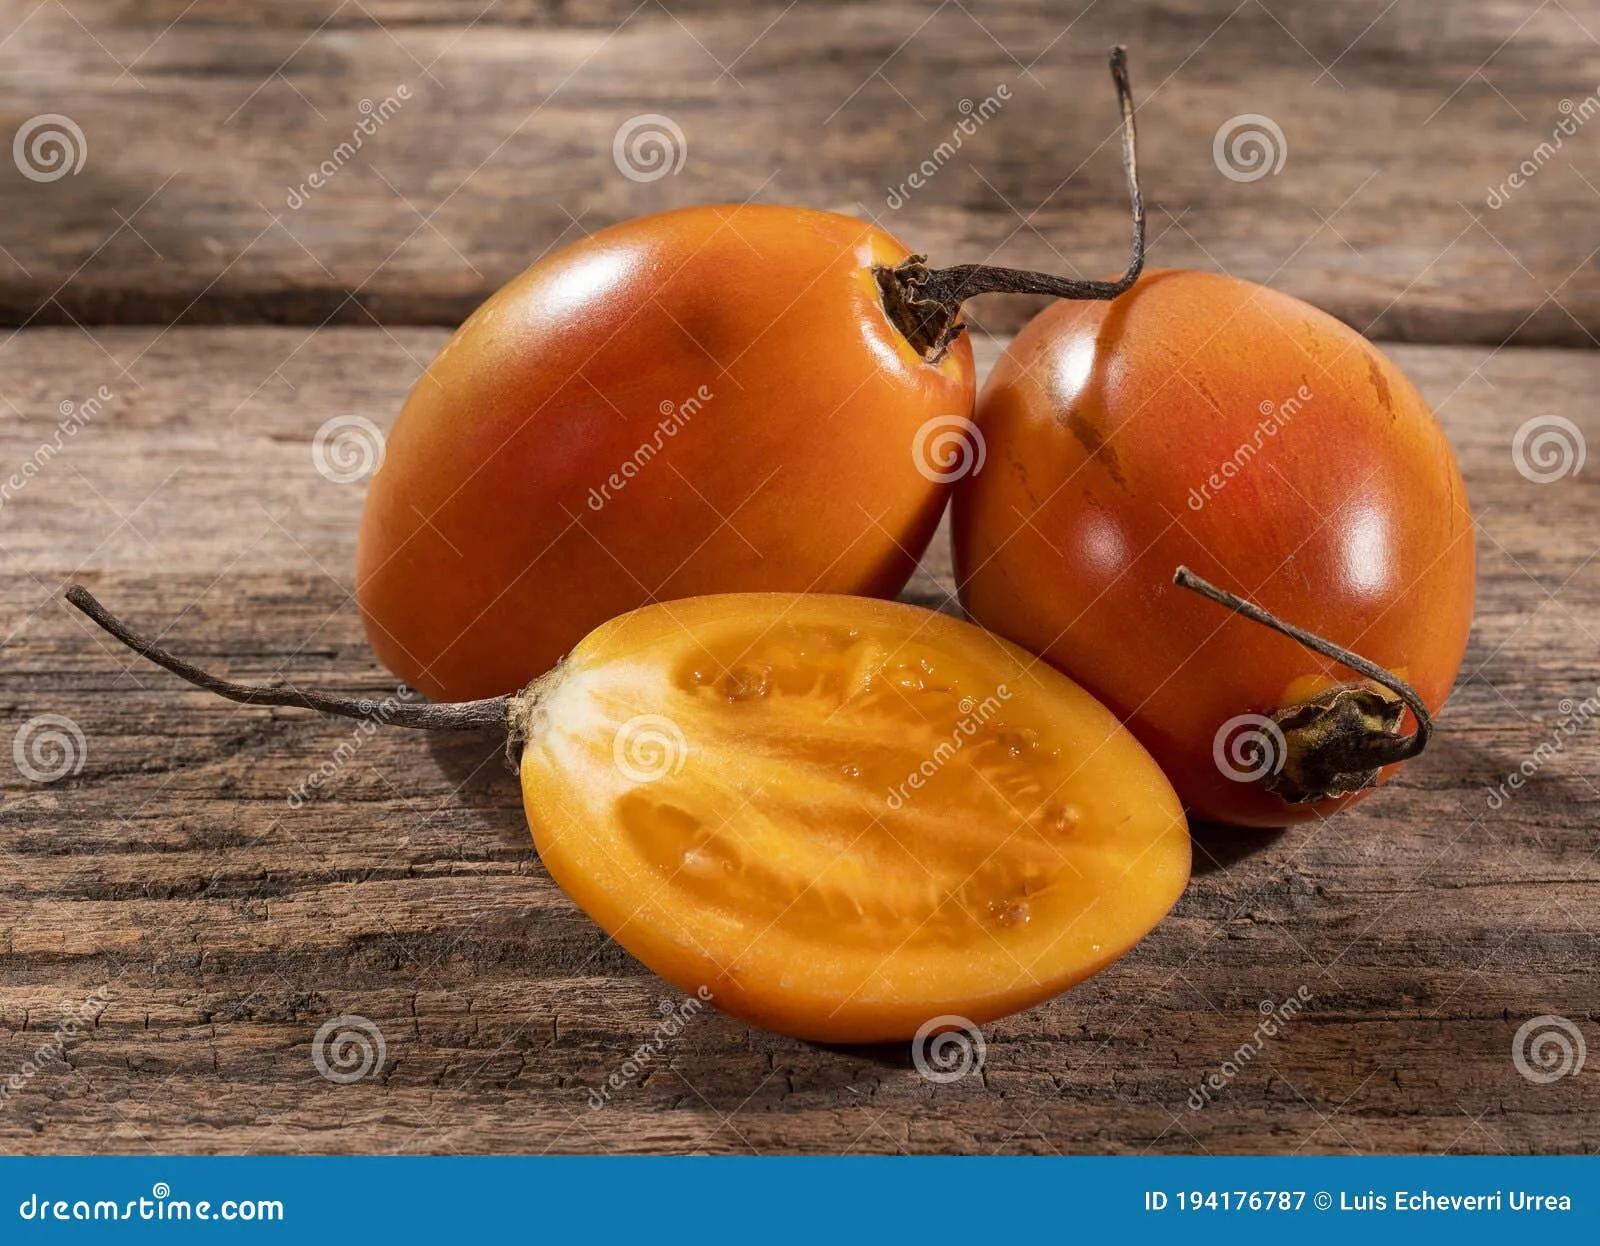 Organic Exotic Fruit Tamarillo - Solanum Betaceum Stock Image - Image ...